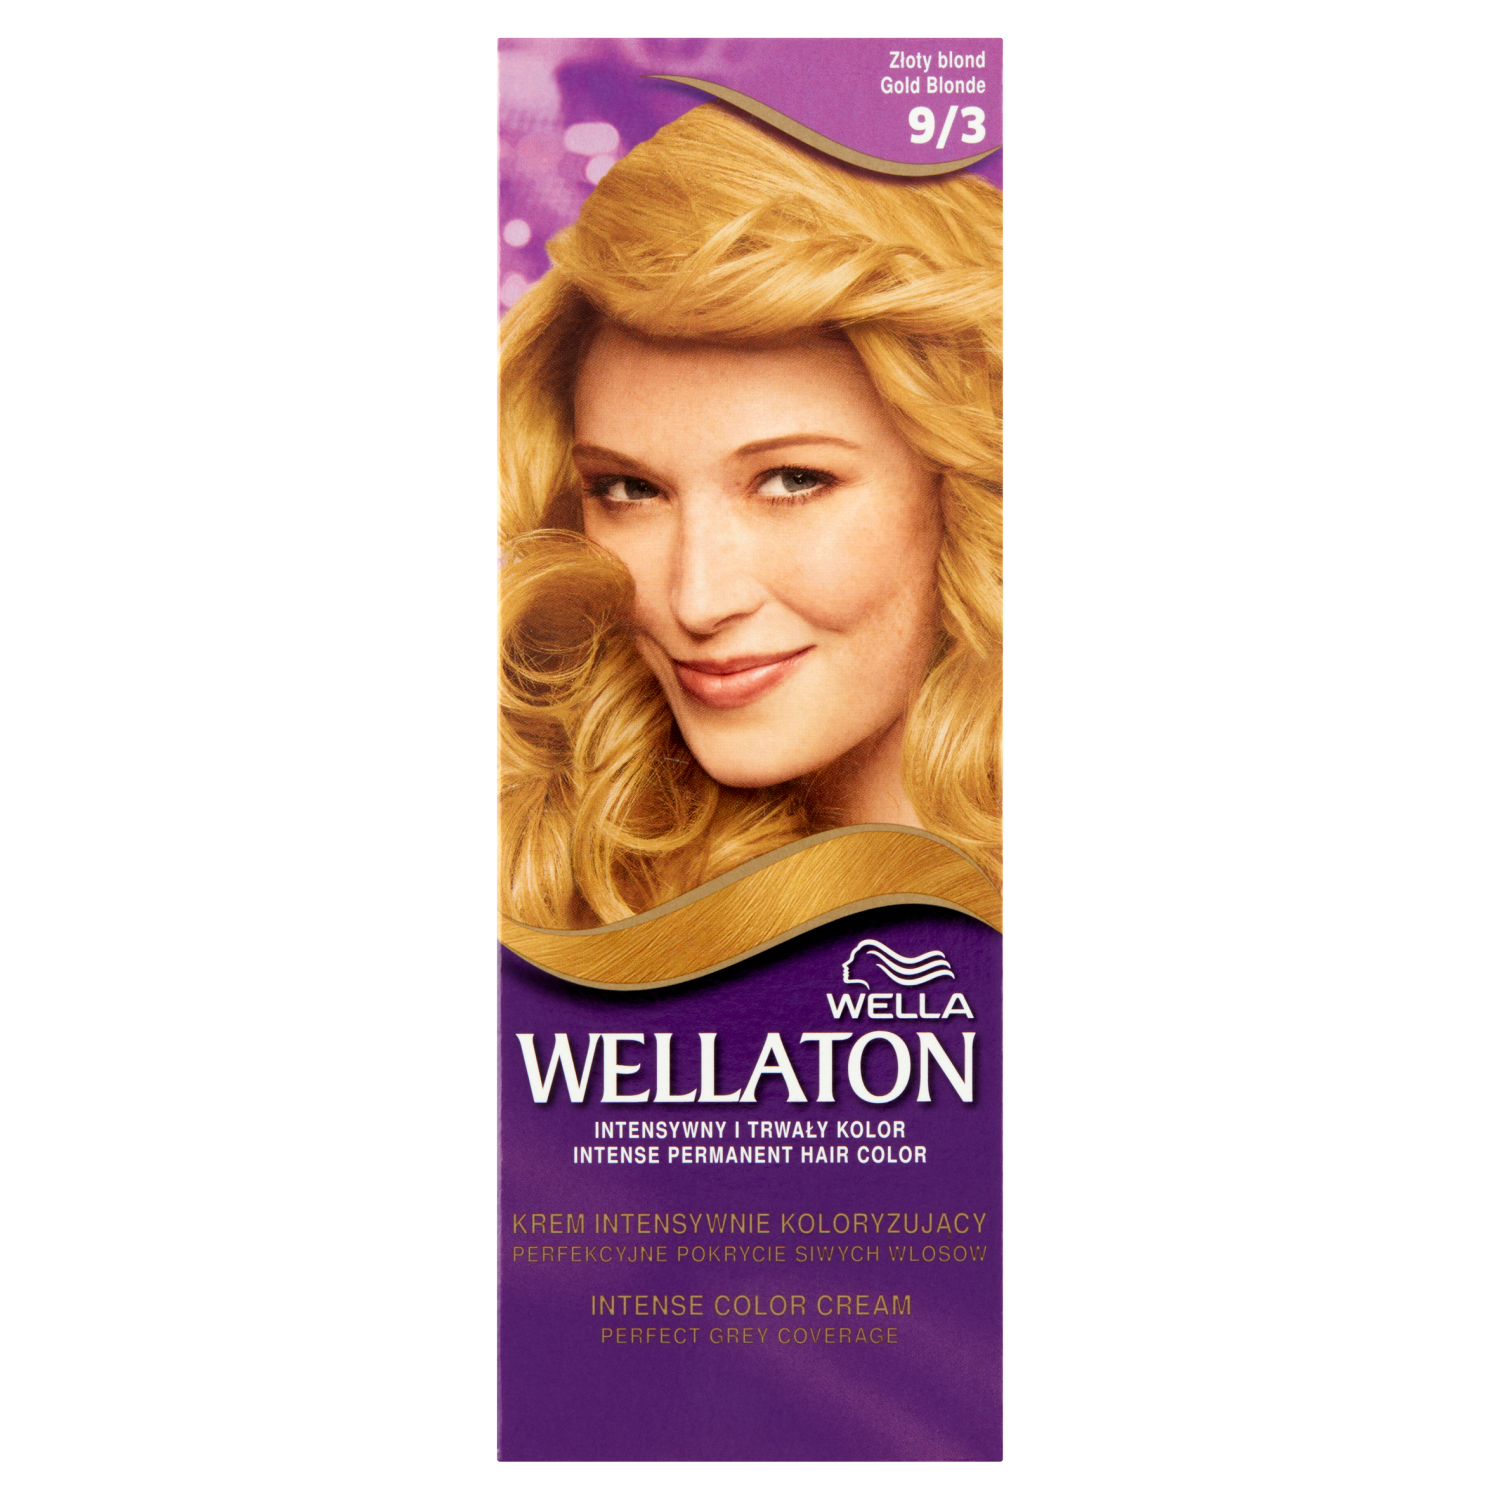 Wella Wellaton крем-краска для волос 93 золотистый блонд, 1 упаковка цена и фото